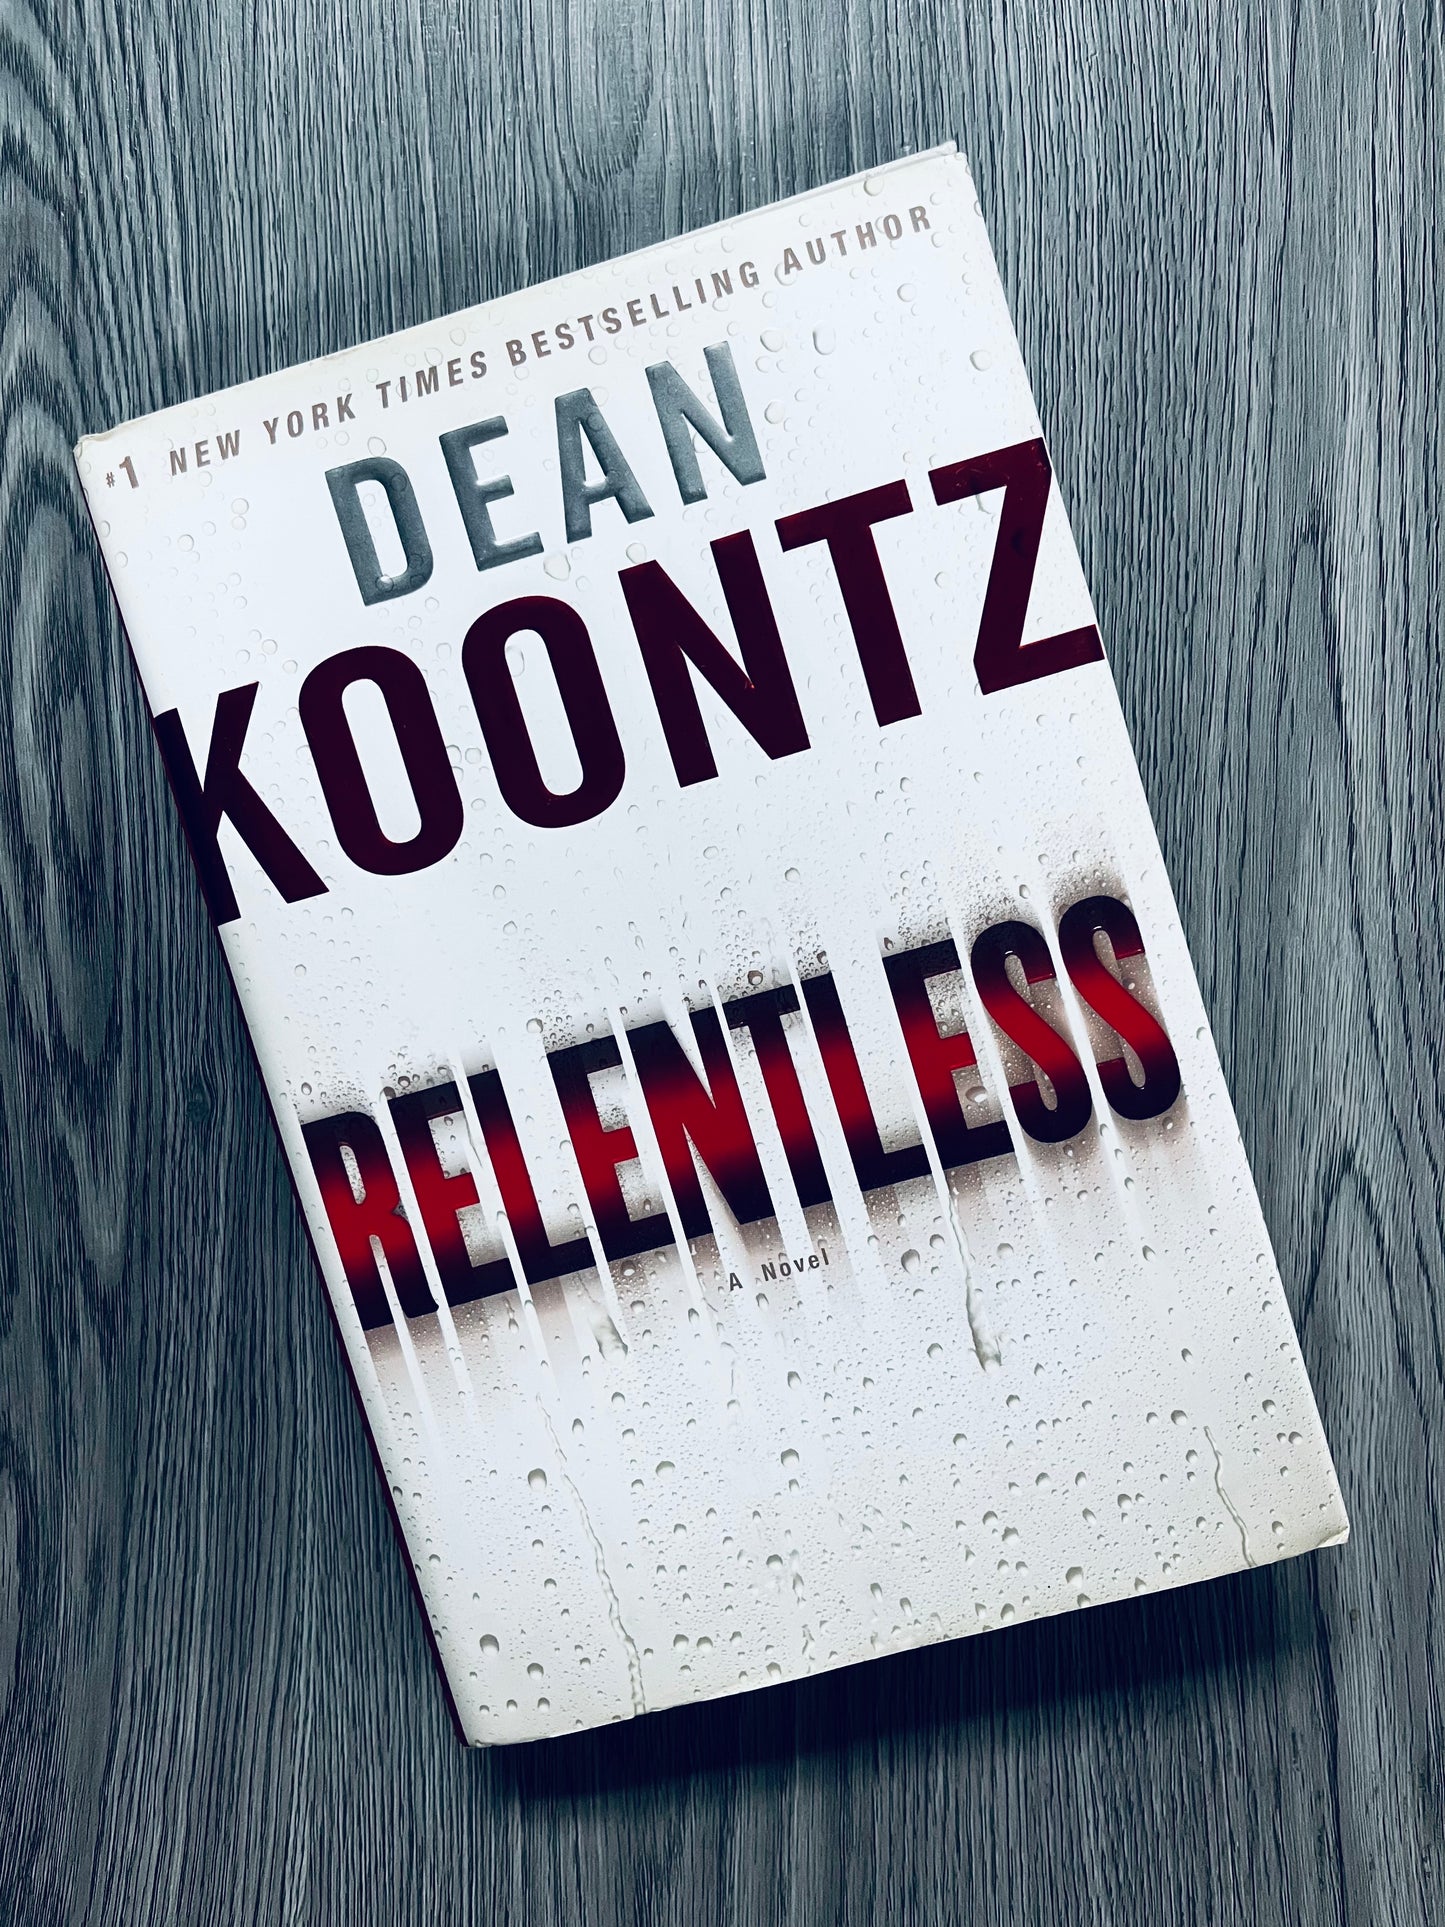 Relentless by Dean Koontz - Hardcover